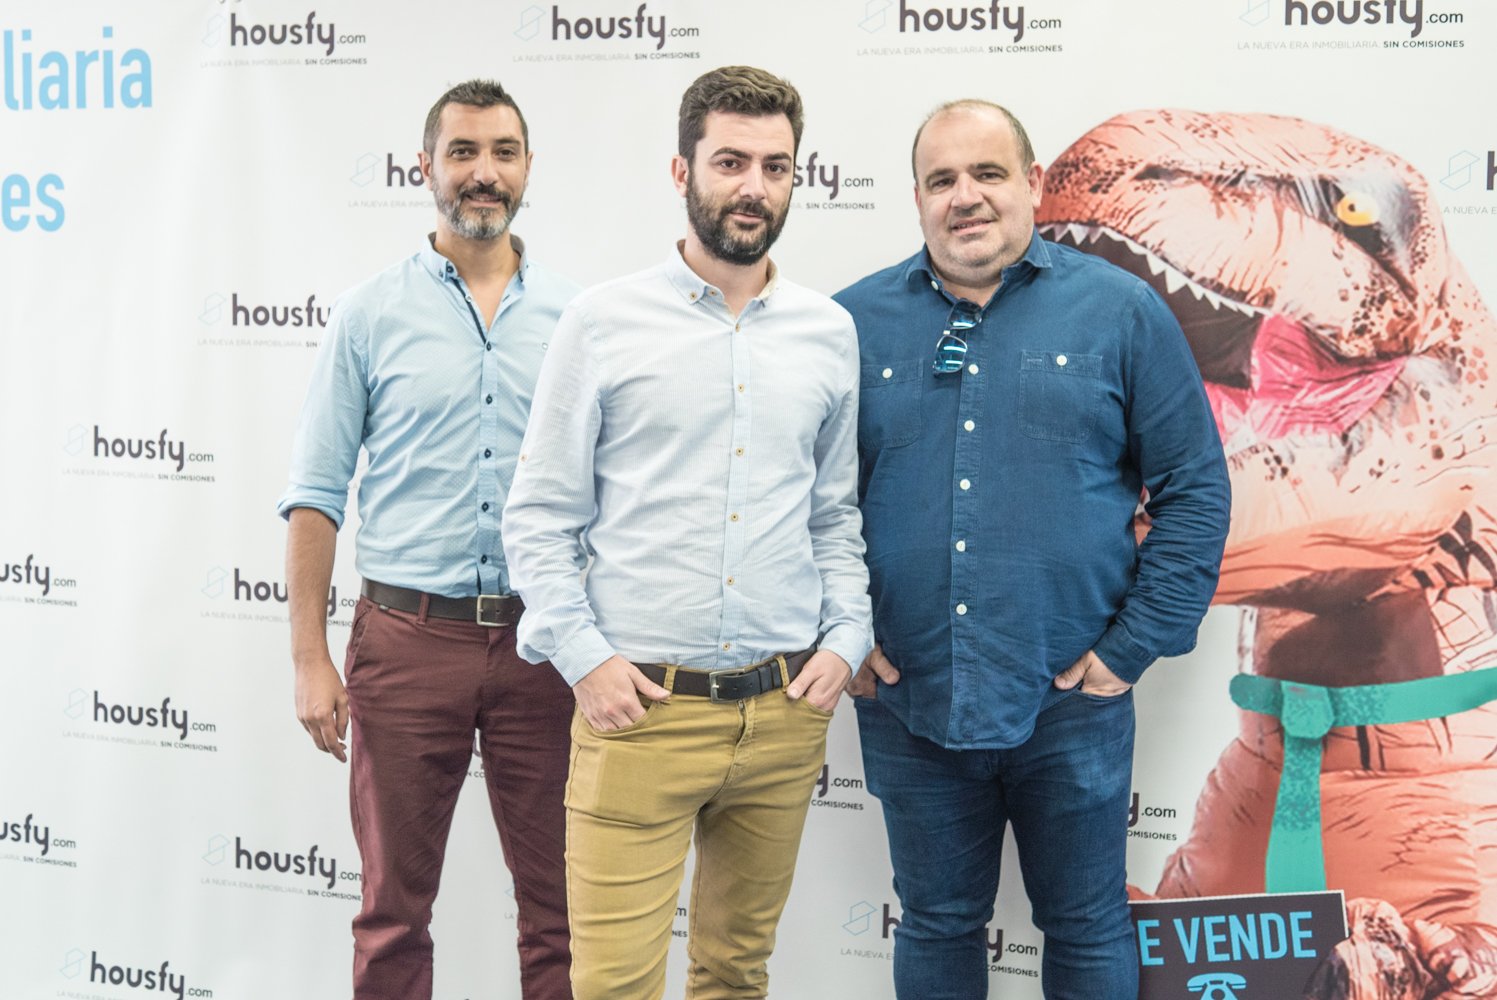 La start-up catalana Housfy tanca una ronda de finançament de 2 milions